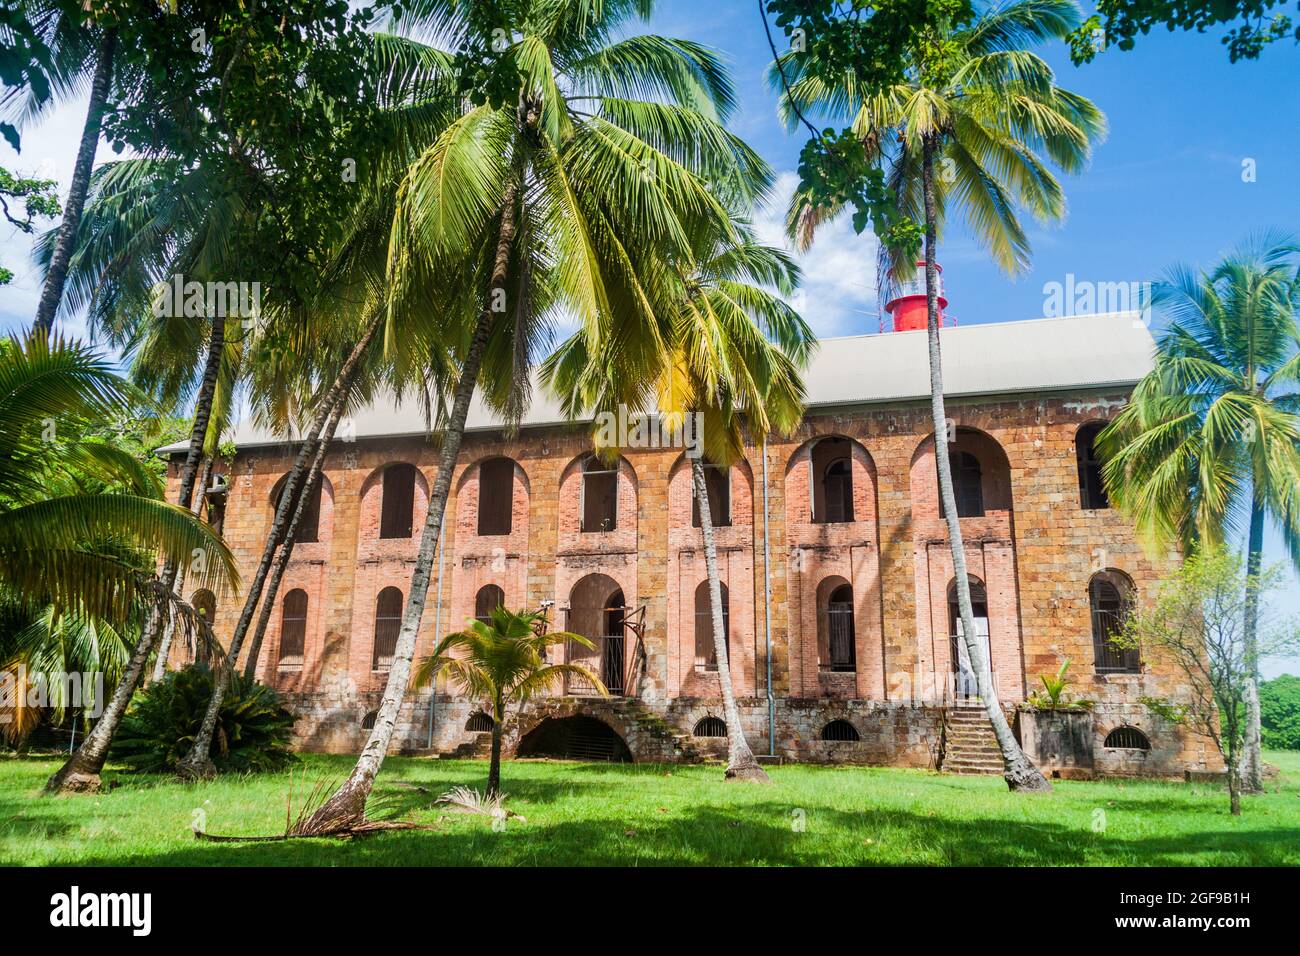 Ex colonia penale a Ile Royale, una delle isole di Iles du Salut (Isole della salvezza) nella Guyana francese Foto Stock